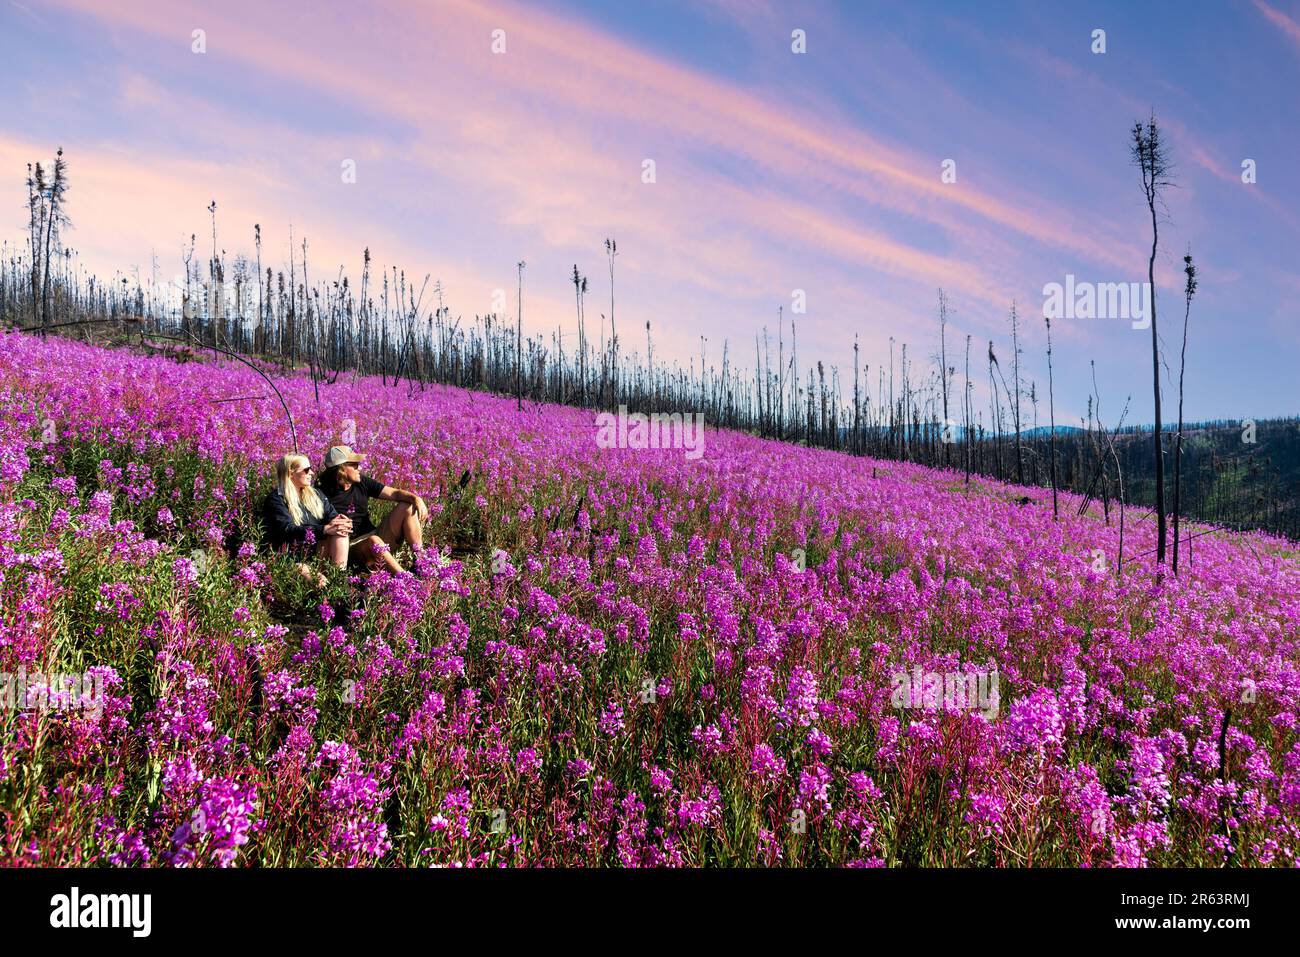 Zwei Personen, ein Paar, das im Sommer nach einem Waldbrand auf einem Feld mit Feuerweed-Blumen in der Wildnis sitzt, wildes Gebiet von Yukon Territory, Kanada. Stockfoto